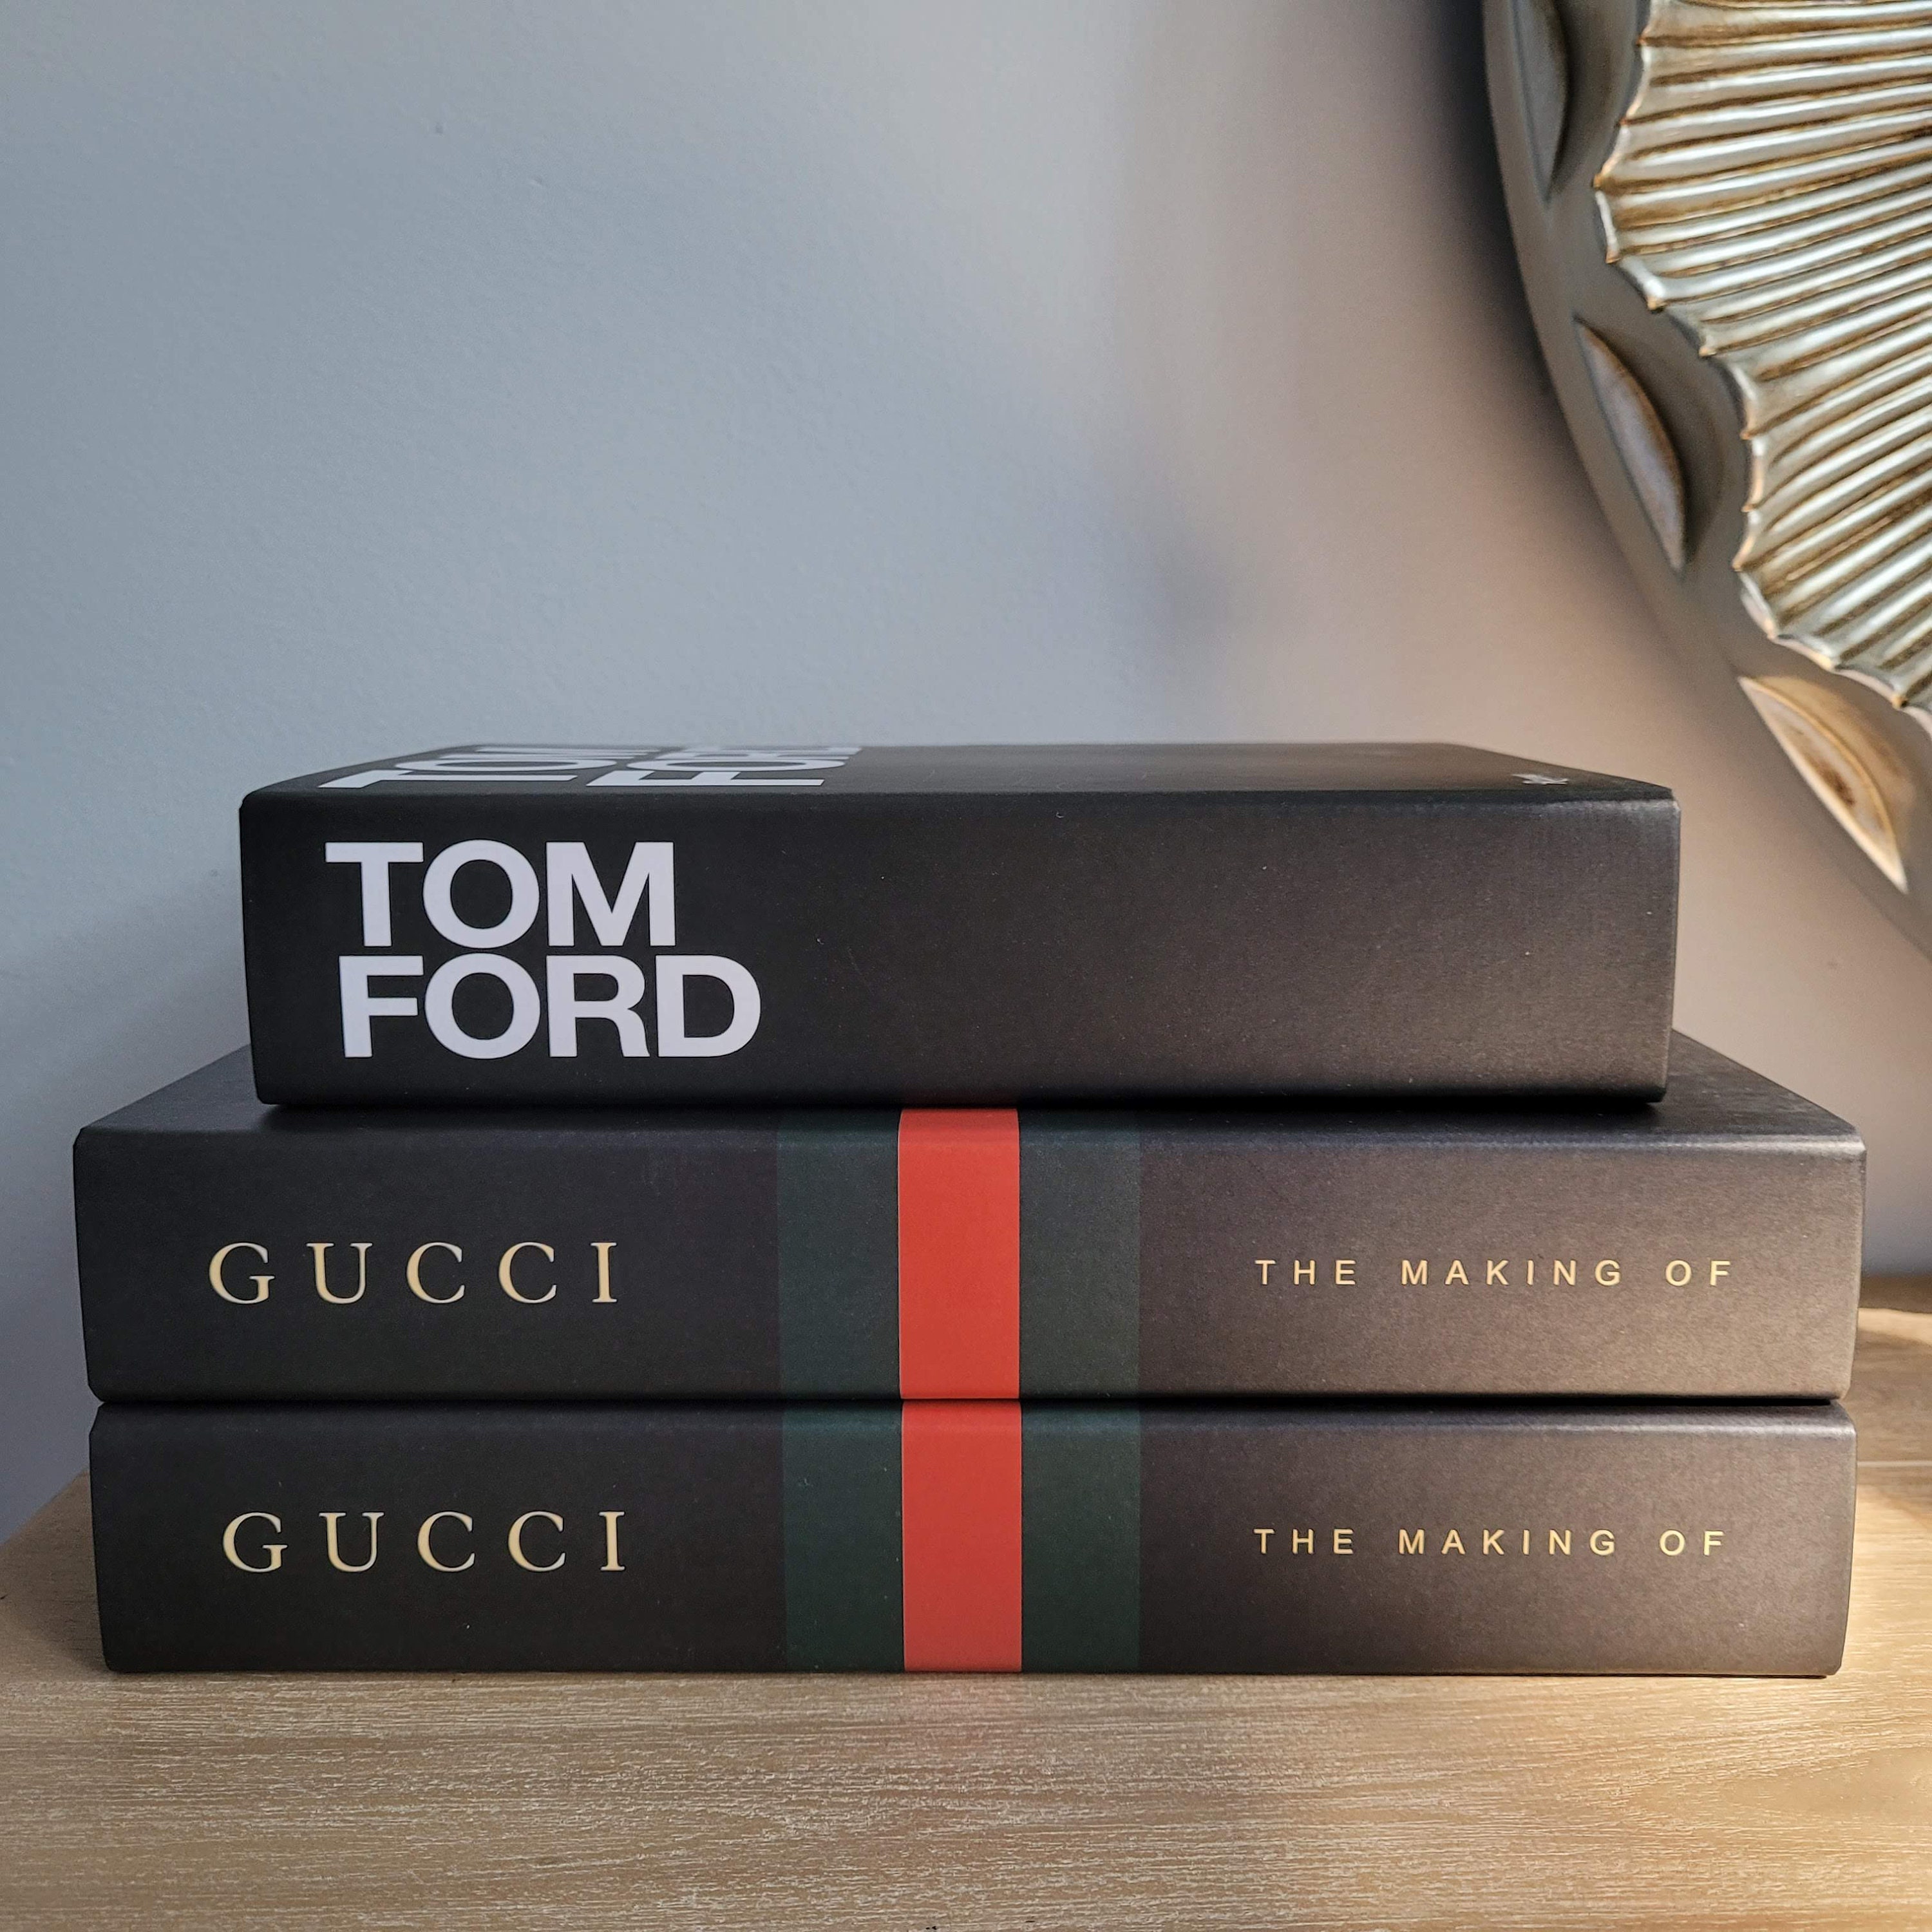 Gucci Books